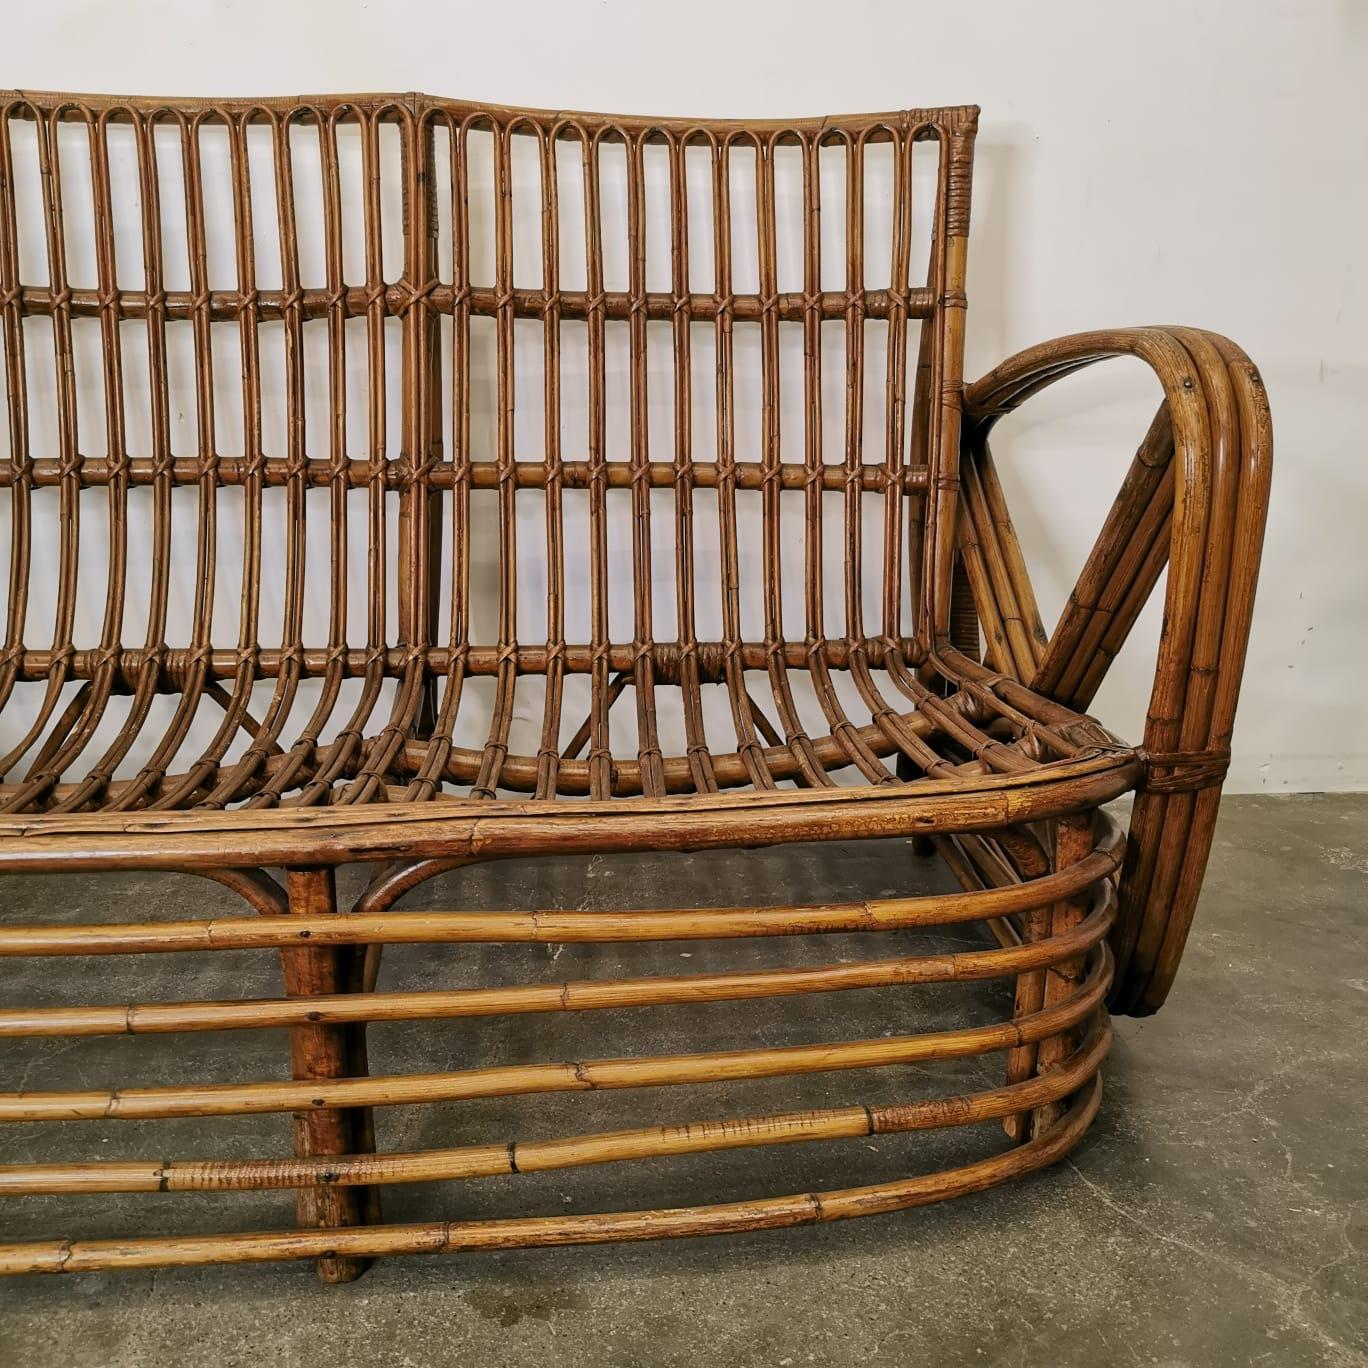 L'ensemble de 2 fauteuils et d'un canapé en bambou conçu par Paul Frankl est une combinaison captivante de beauté naturelle et de design moderne. Fabriquées à partir de bambou durable, ces pièces exhalent un air d'élégance organique tout en mettant